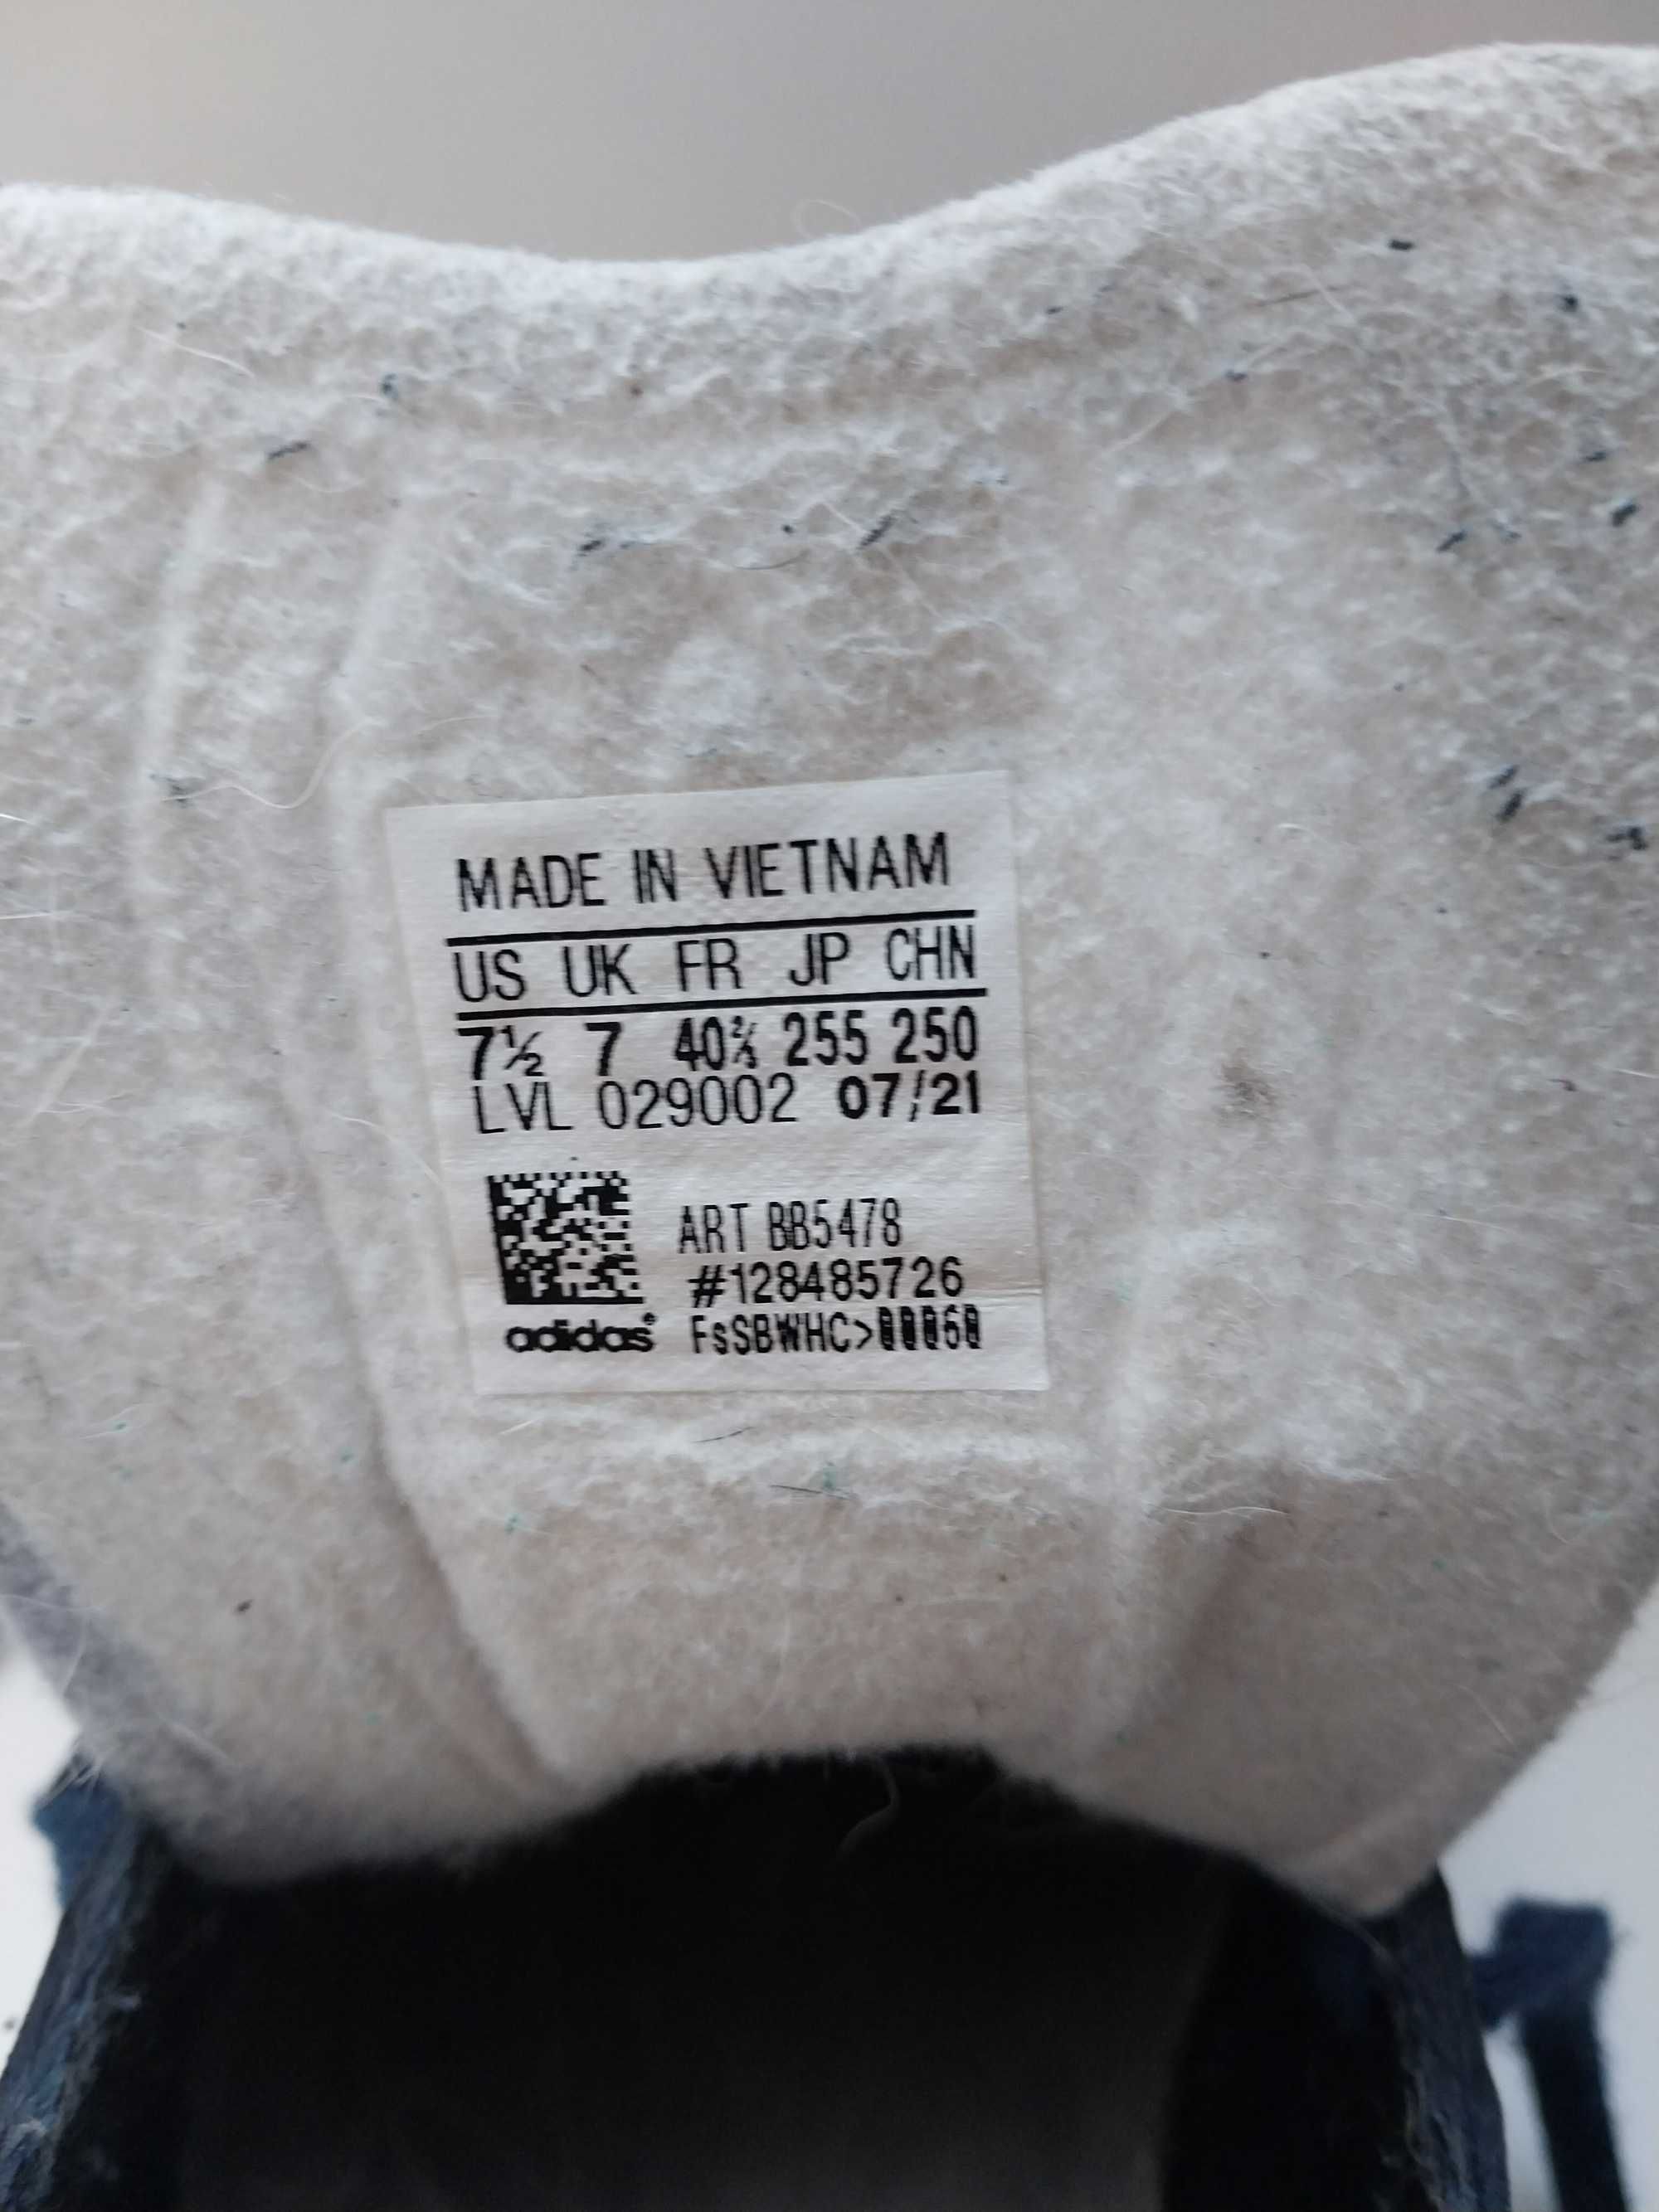 Adidas Gazelle Вьетнам Оригинал кроссовки кожа Размер 39 Стелька 25 см